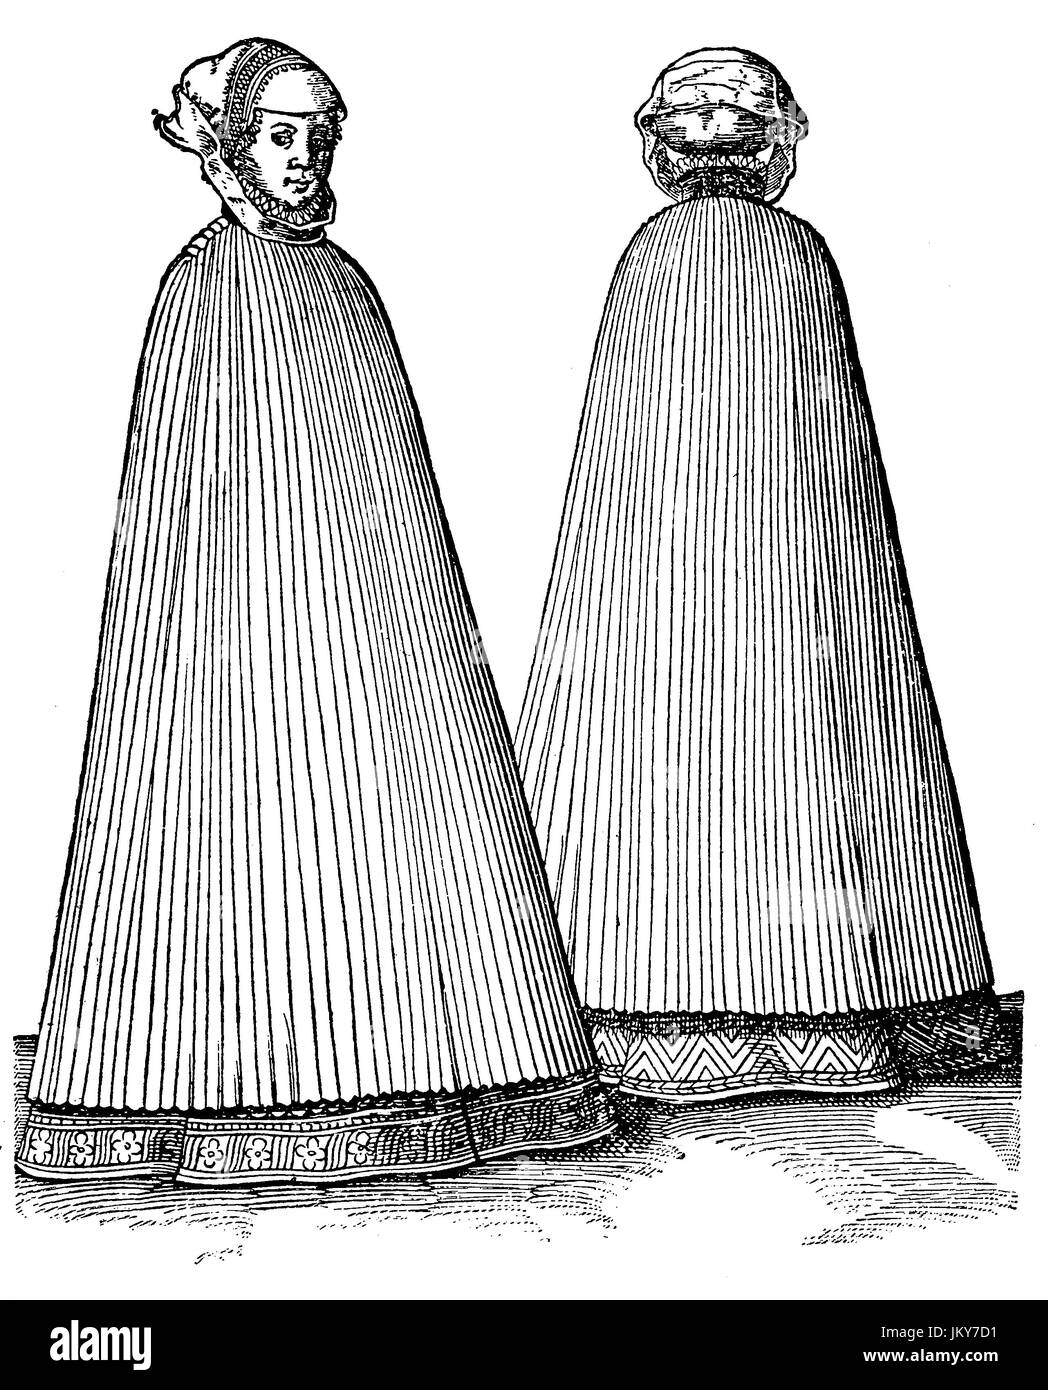 Digital verbessert:, die Kleidung von schwangeren Frauen kurz vor der Geburt, Kostüm-Bild von Jost Ammann Kostüm Buch, Publikation aus dem Jahr 1882 Stockfoto